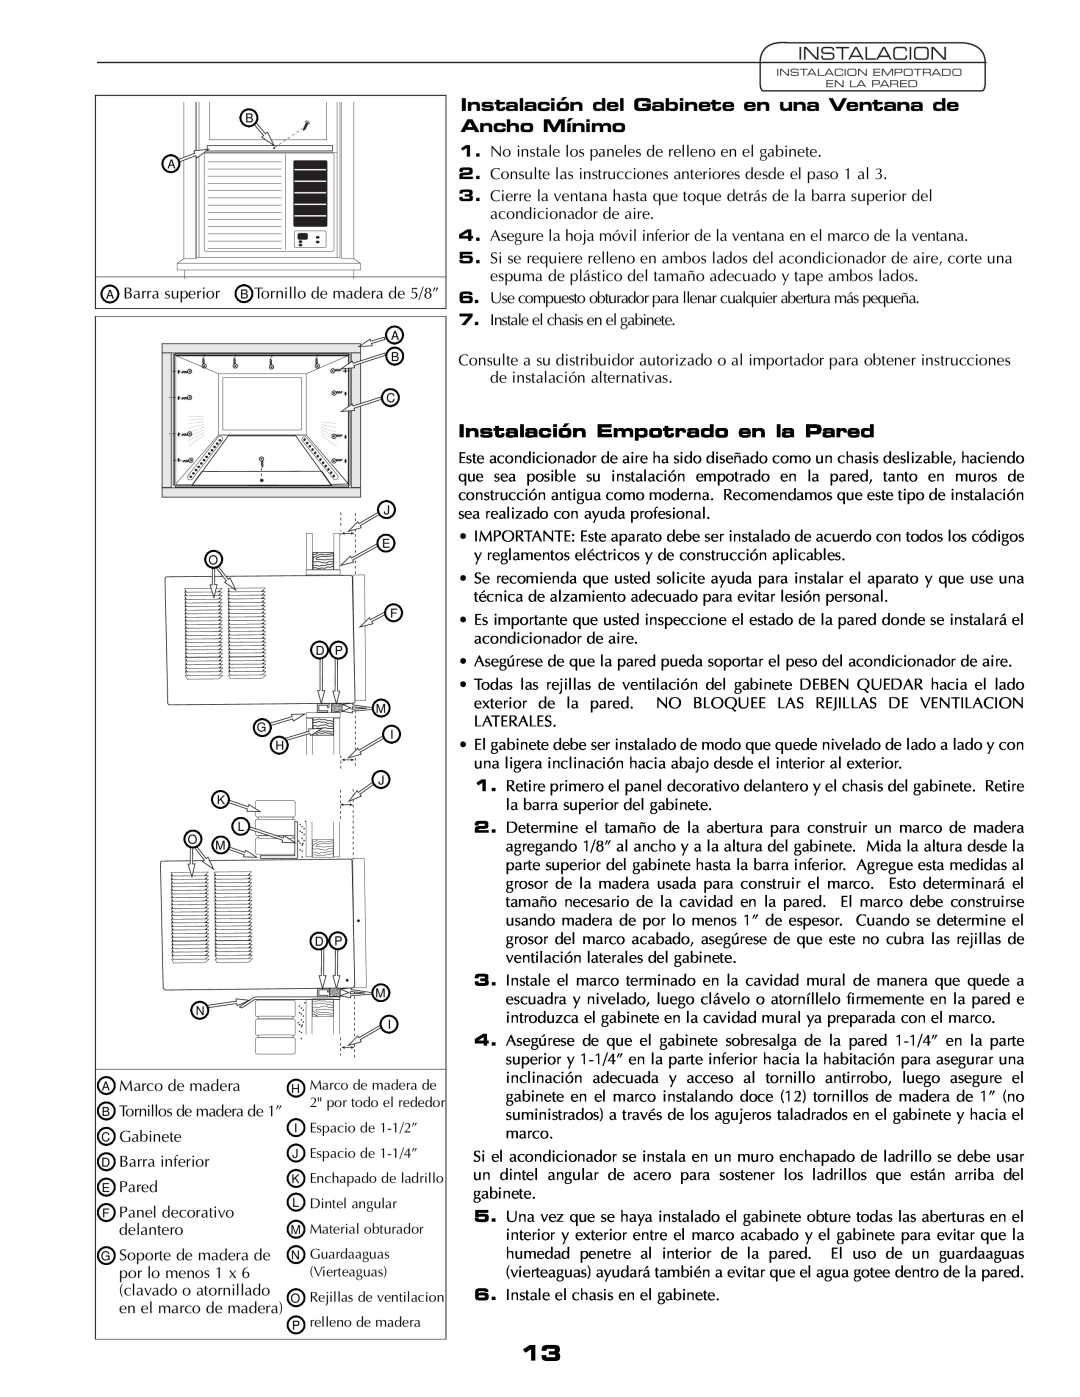 Fedders AEY08F2B important safety instructions Instalacion, Instalación Empotrado en la Pared 